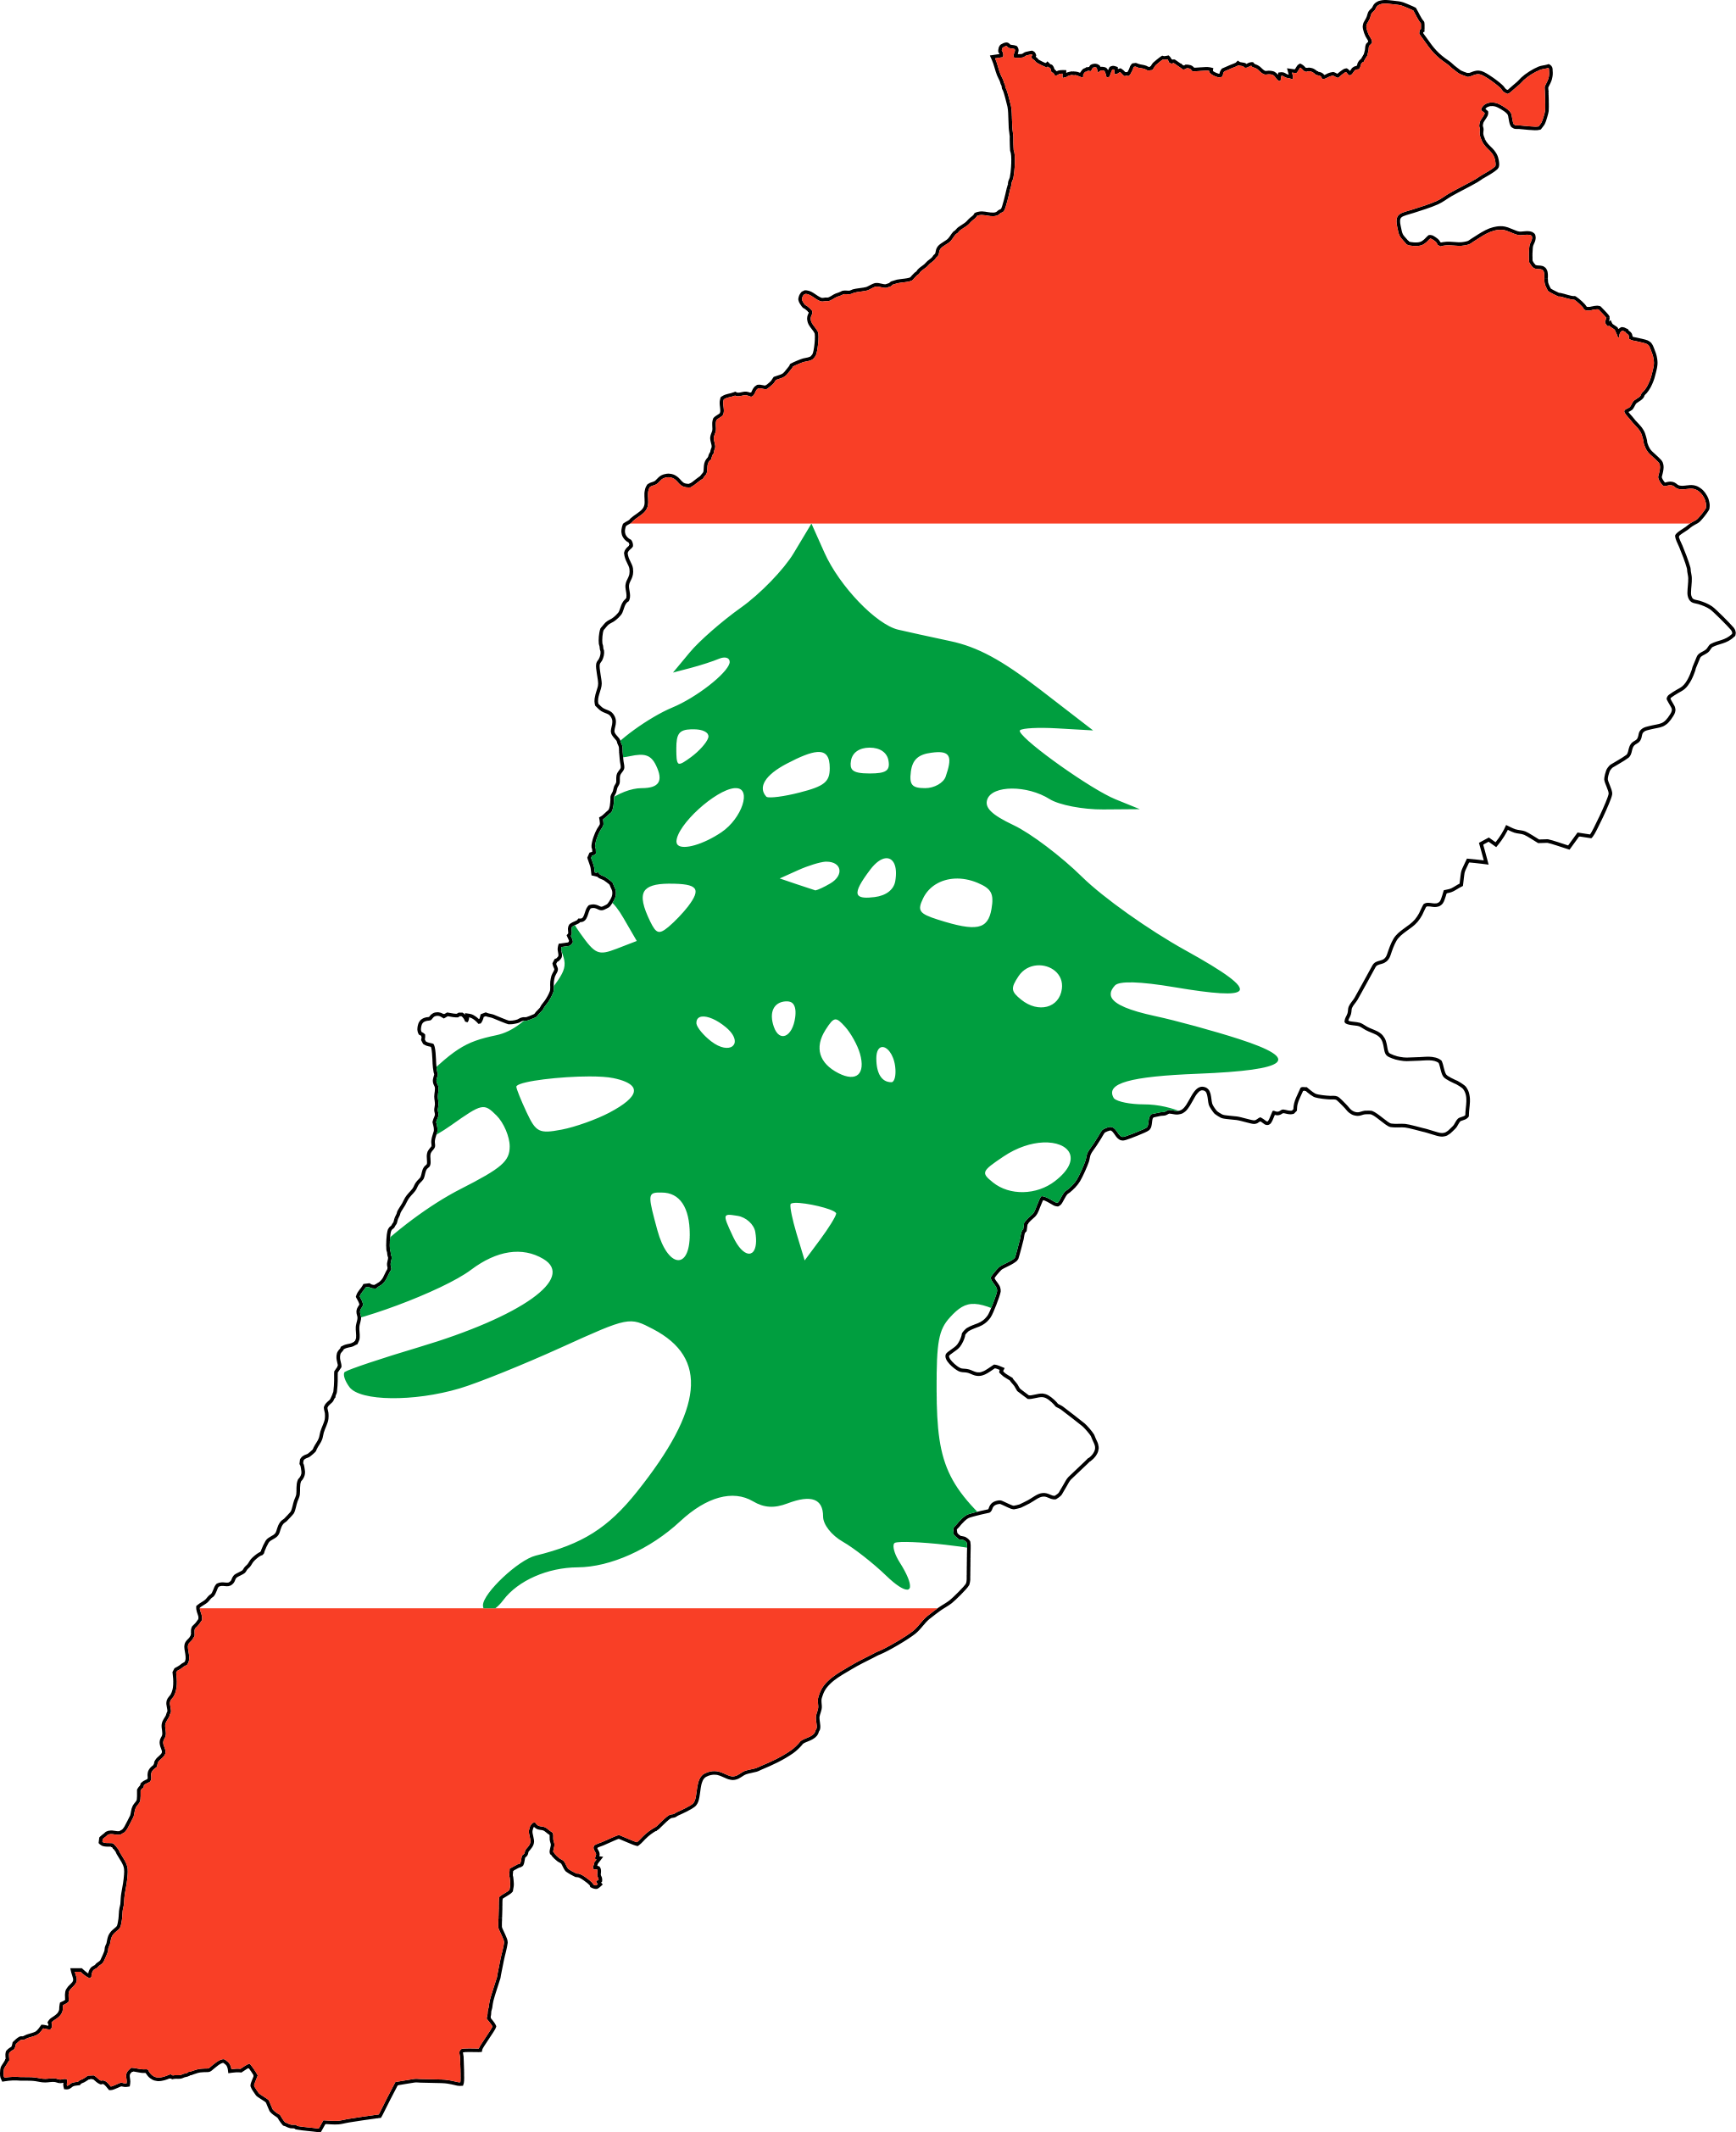 Lebanon Flag Map. Lebanon, officially known as the Lebanese